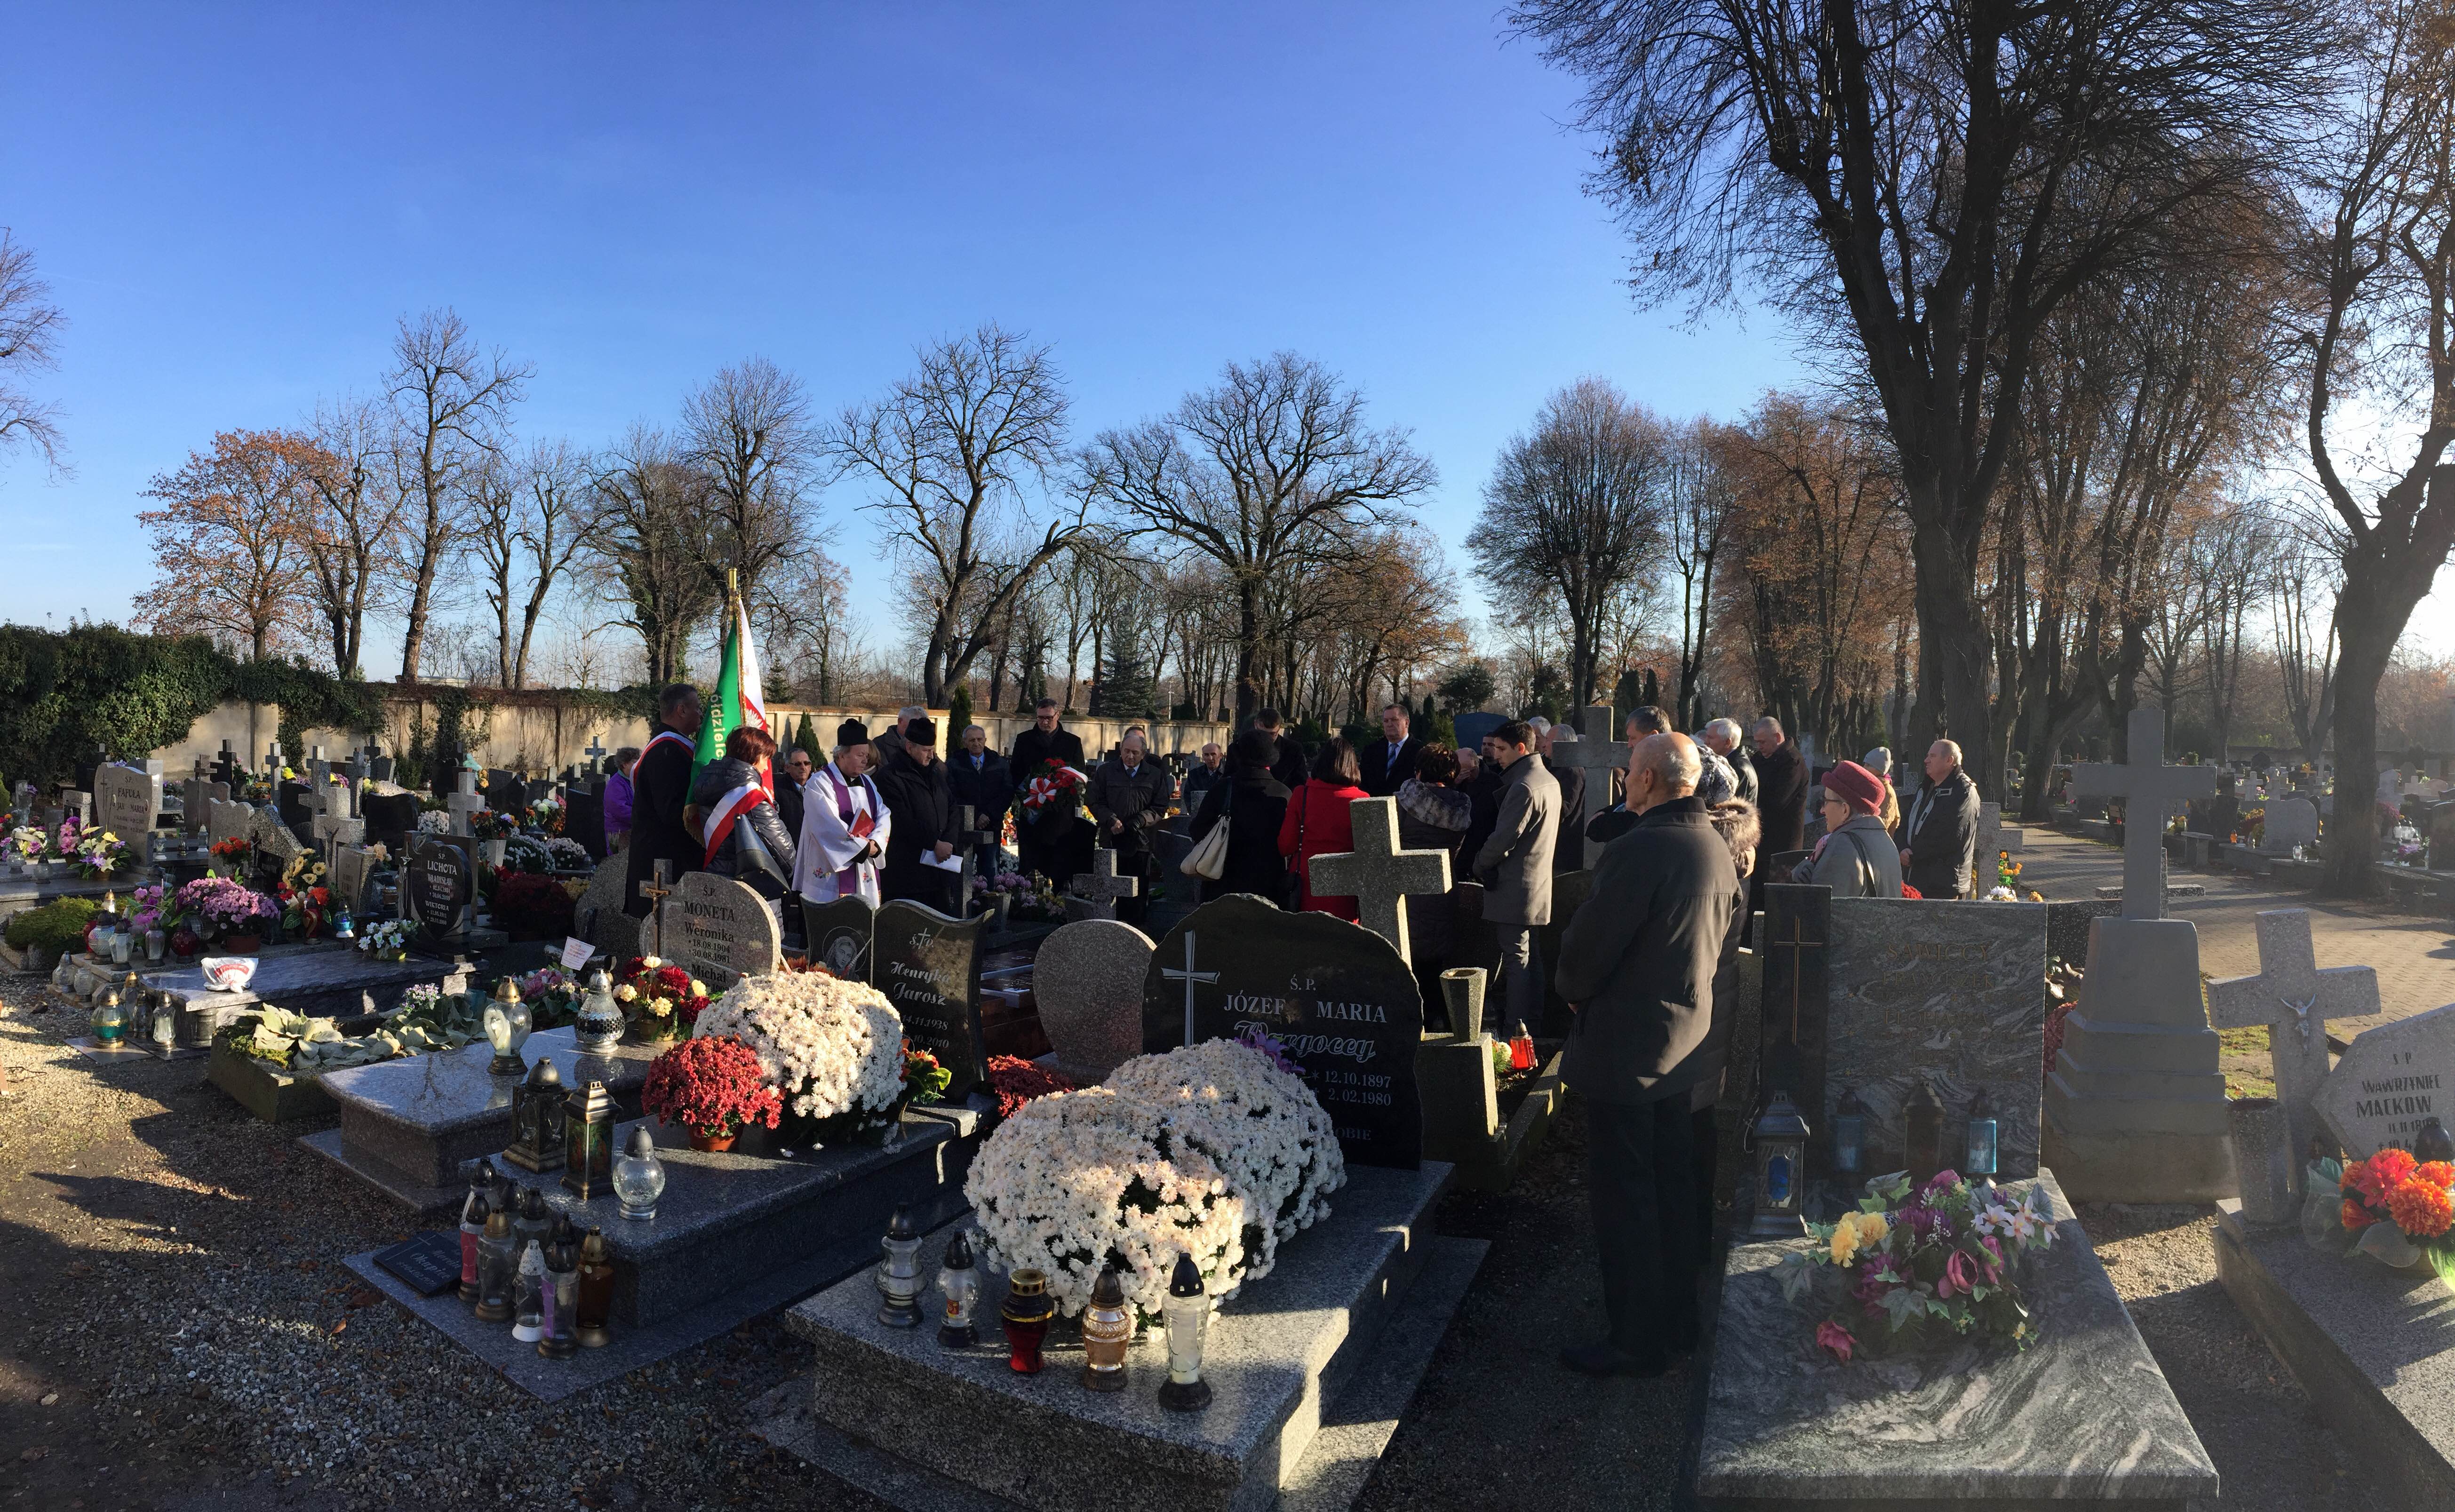 zdjęcie przedstawia grupę ludzi na cmentarzu stojących wśród pomników